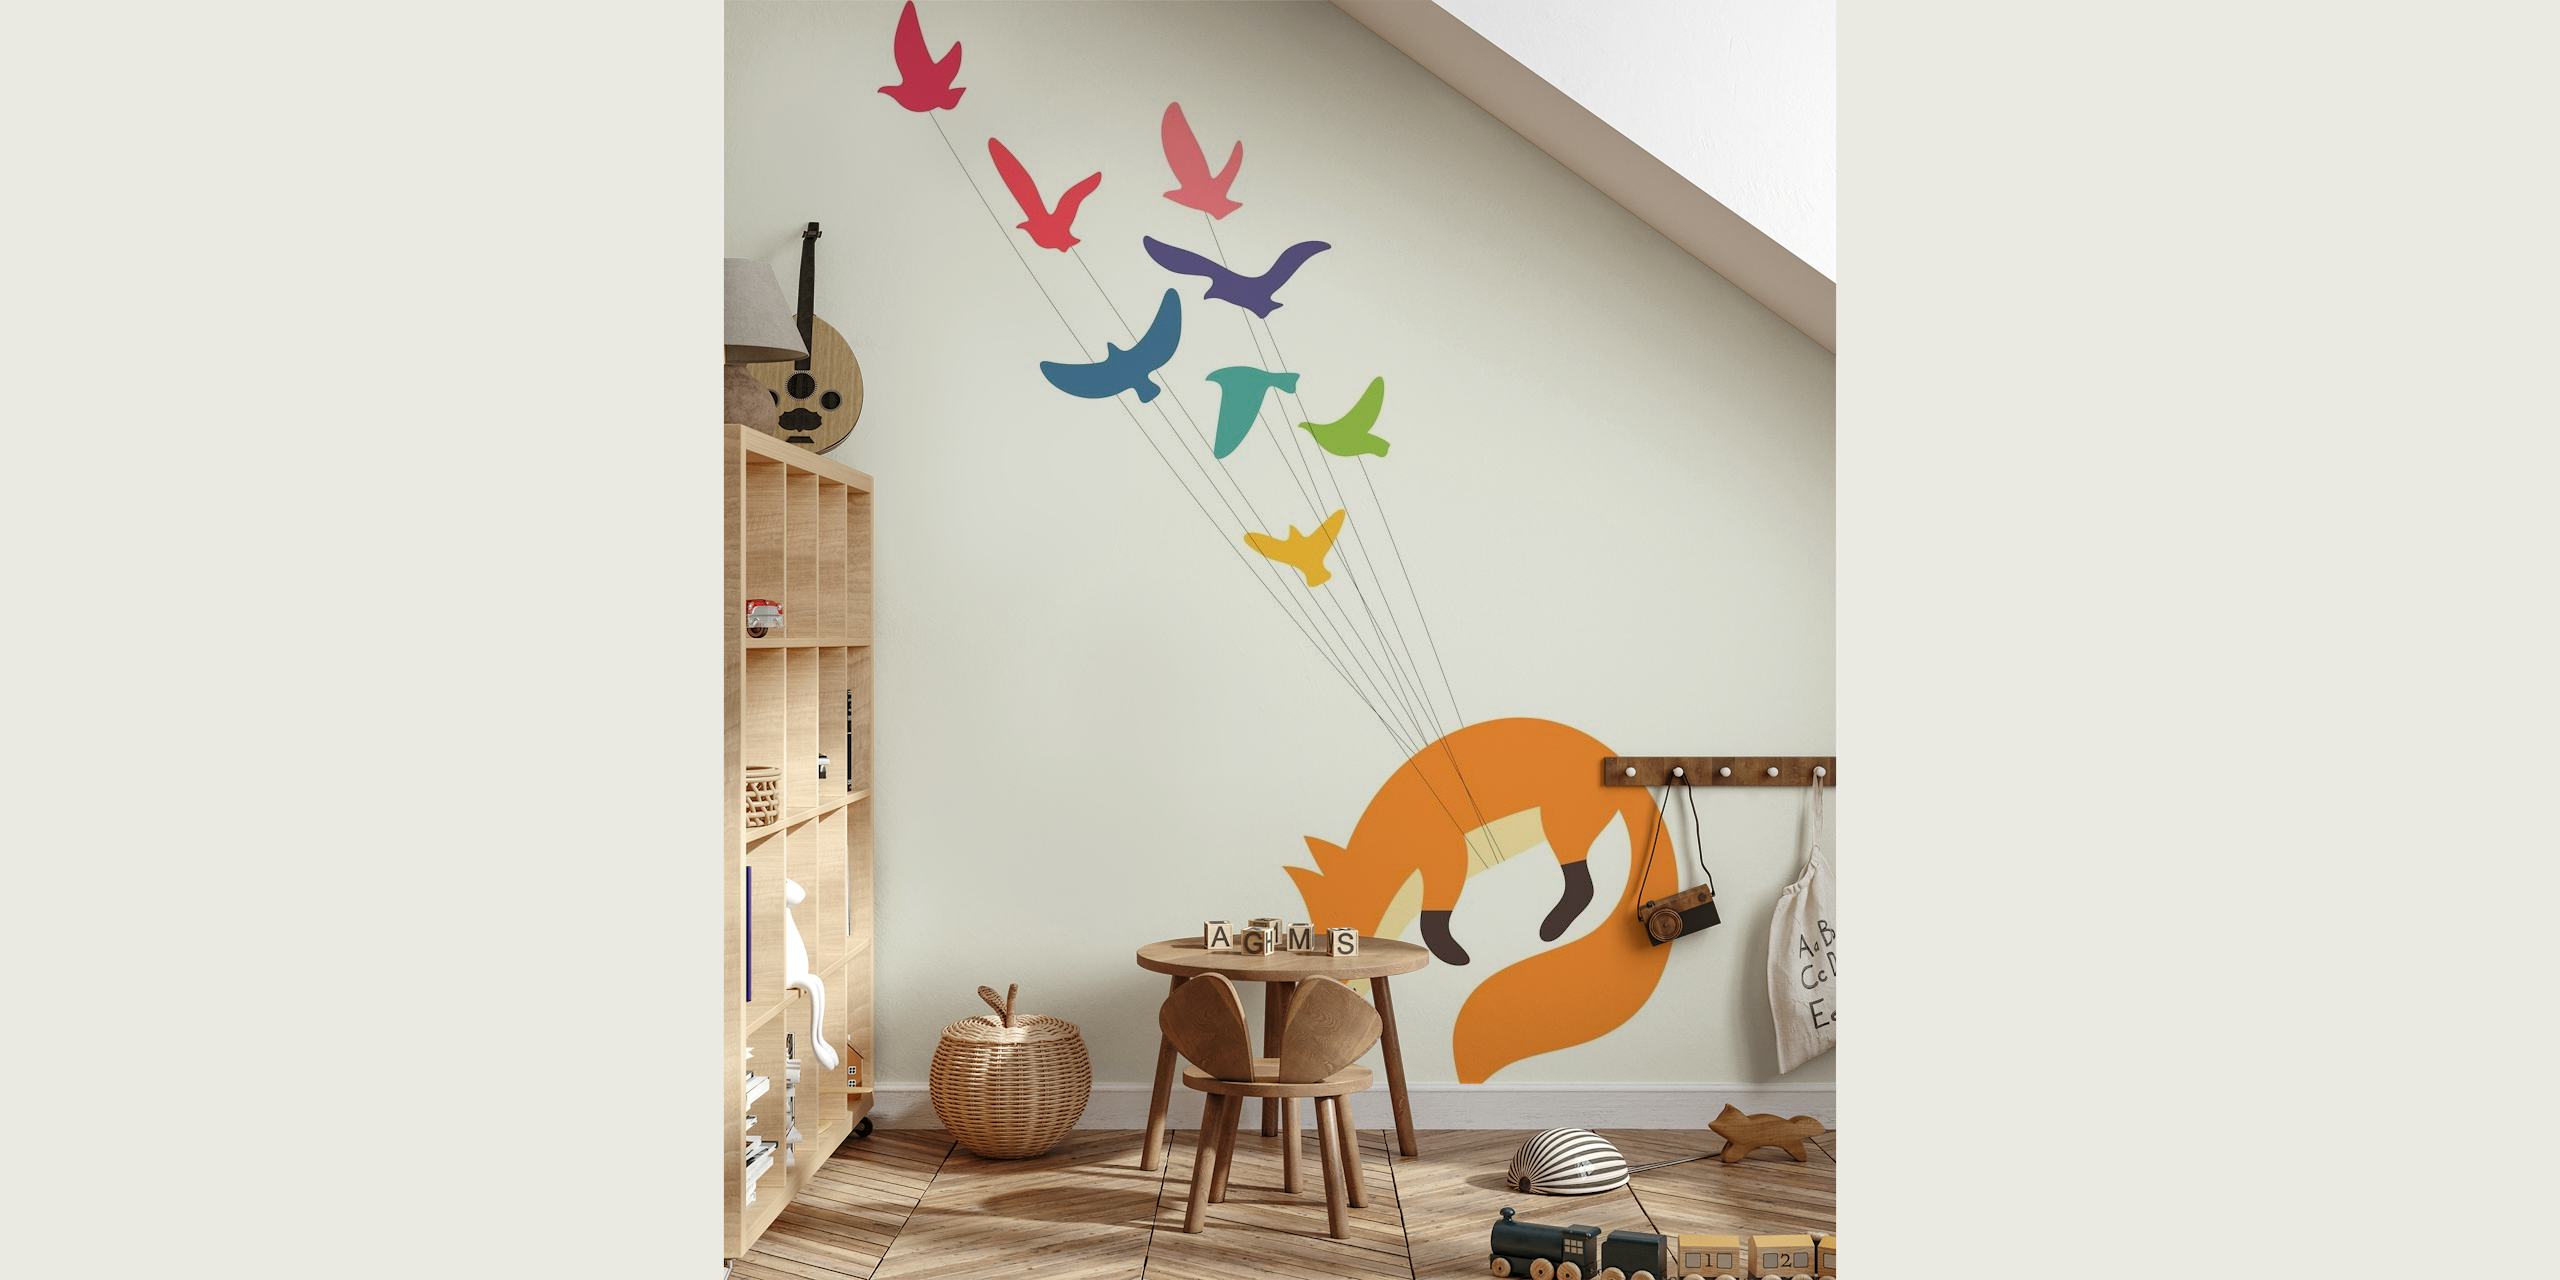 Illustration eines Fuchses, der von farbenfrohen Vögeln als Wandgemälde weggetragen wird